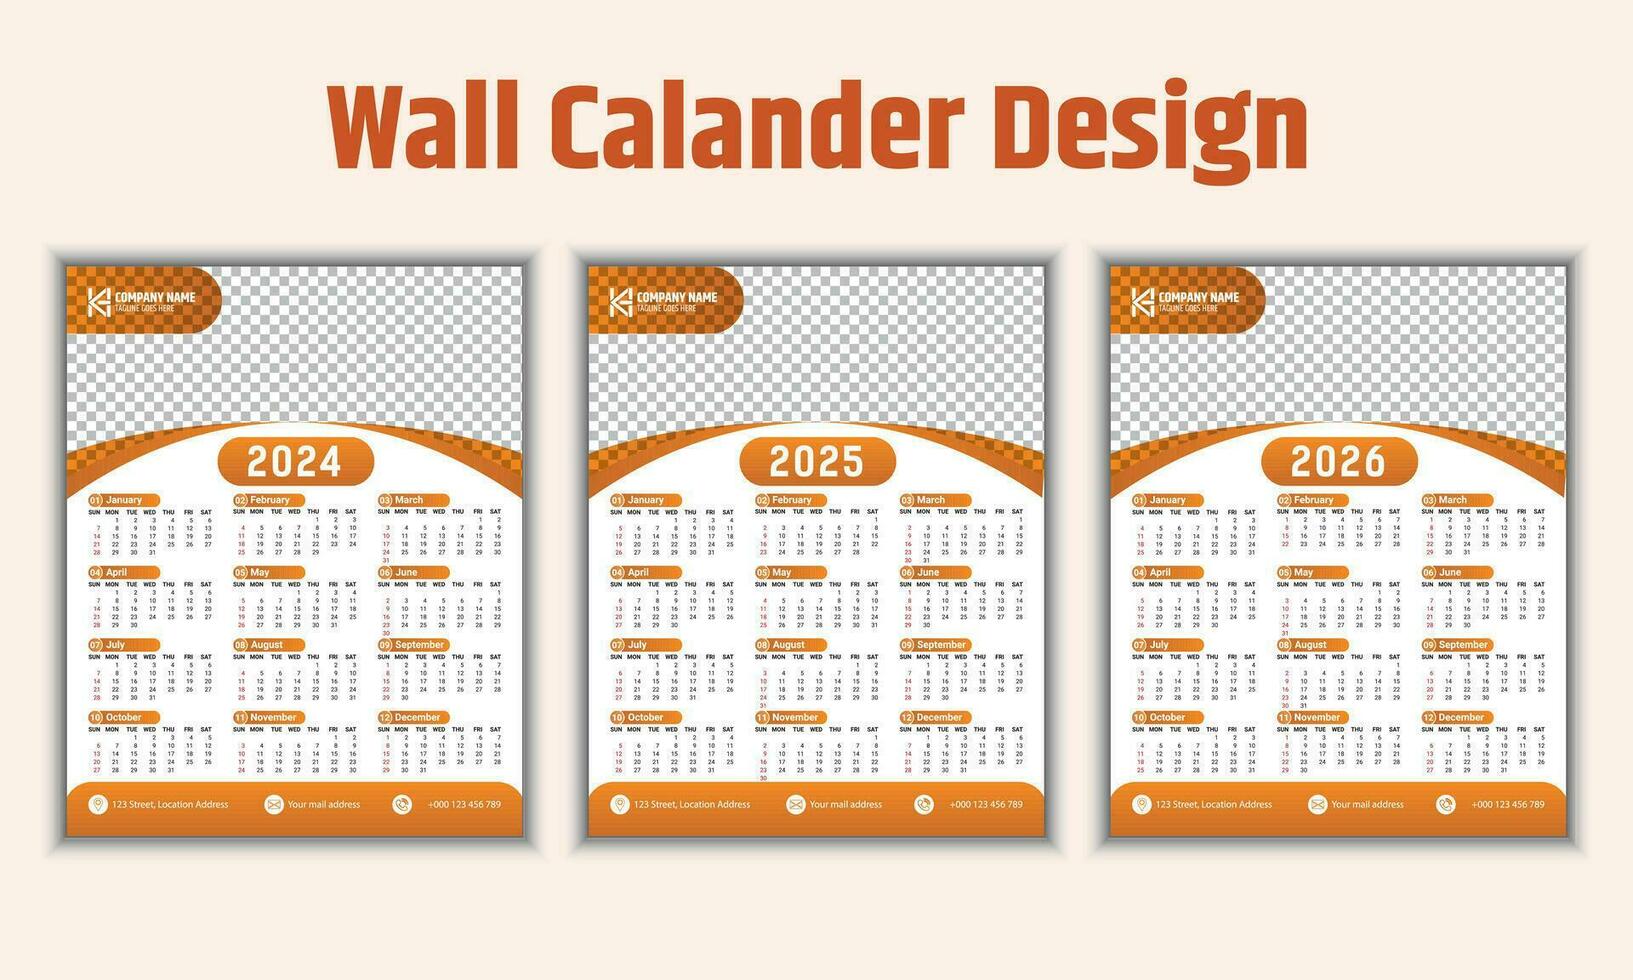 creativo pared calendario diseño para 2024. semana empieza en domingo y 12 meses de diseño son incluido. un profesional y adecuado modelo para el compañía. vector ilustración